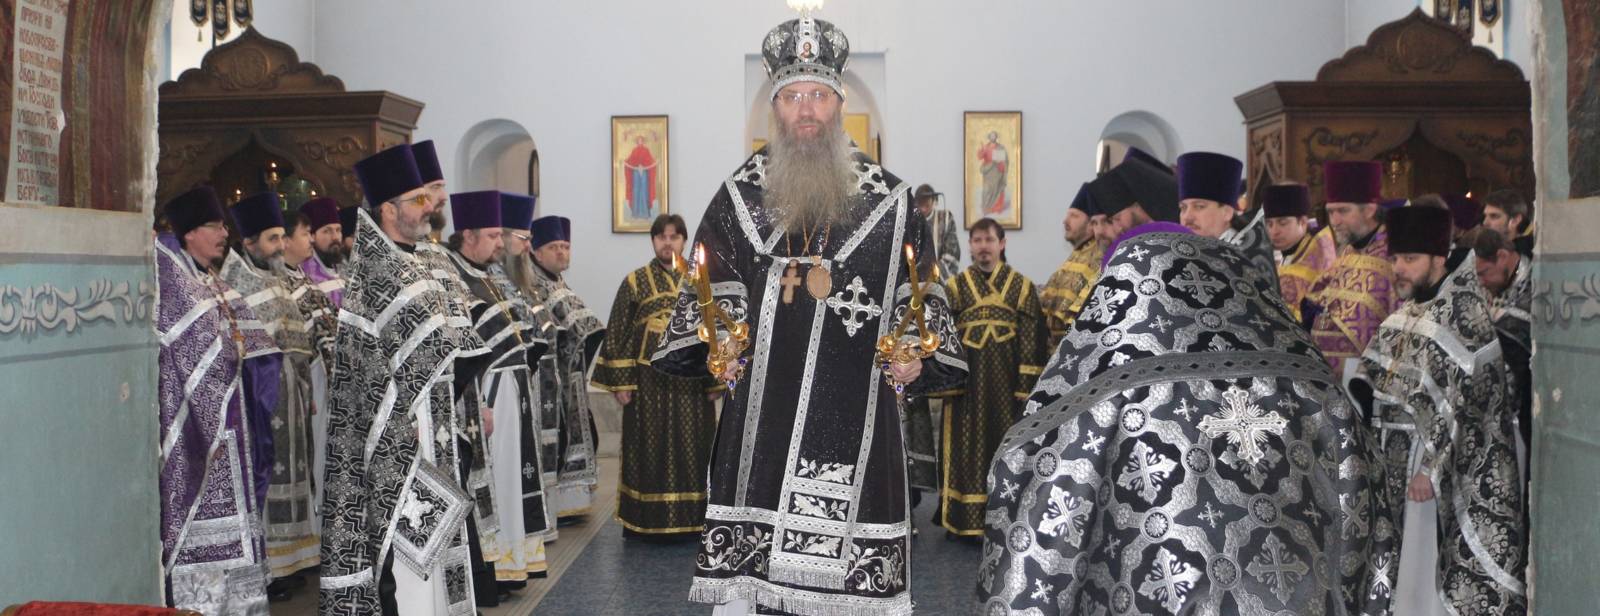 Божественная литургия Преждеосвященных даров в Покровском кафедральном соборе г. Урюпинска